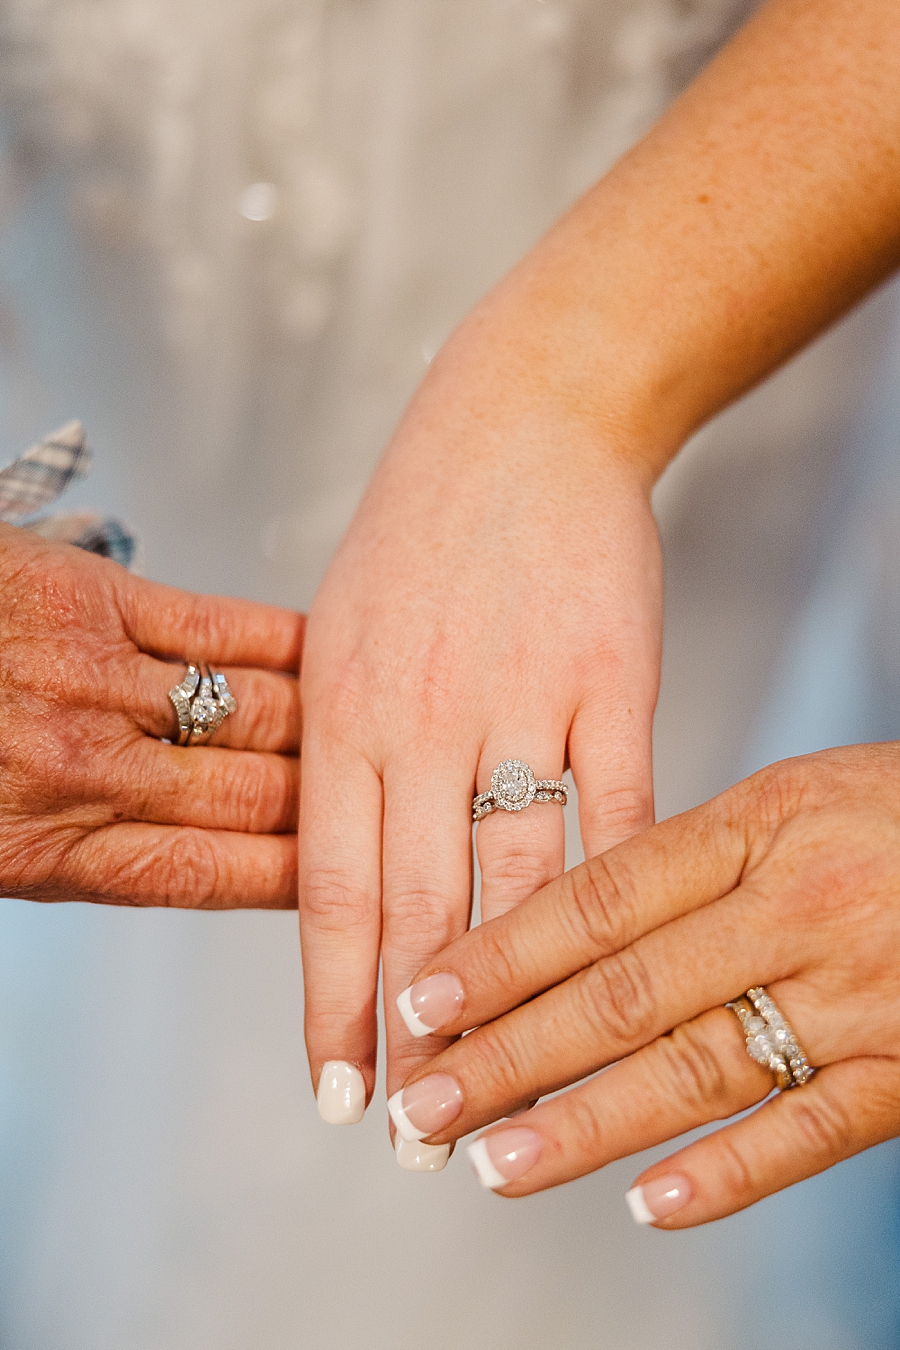 Generations of rings at Ramble Creek wedding by Amanda May Photos